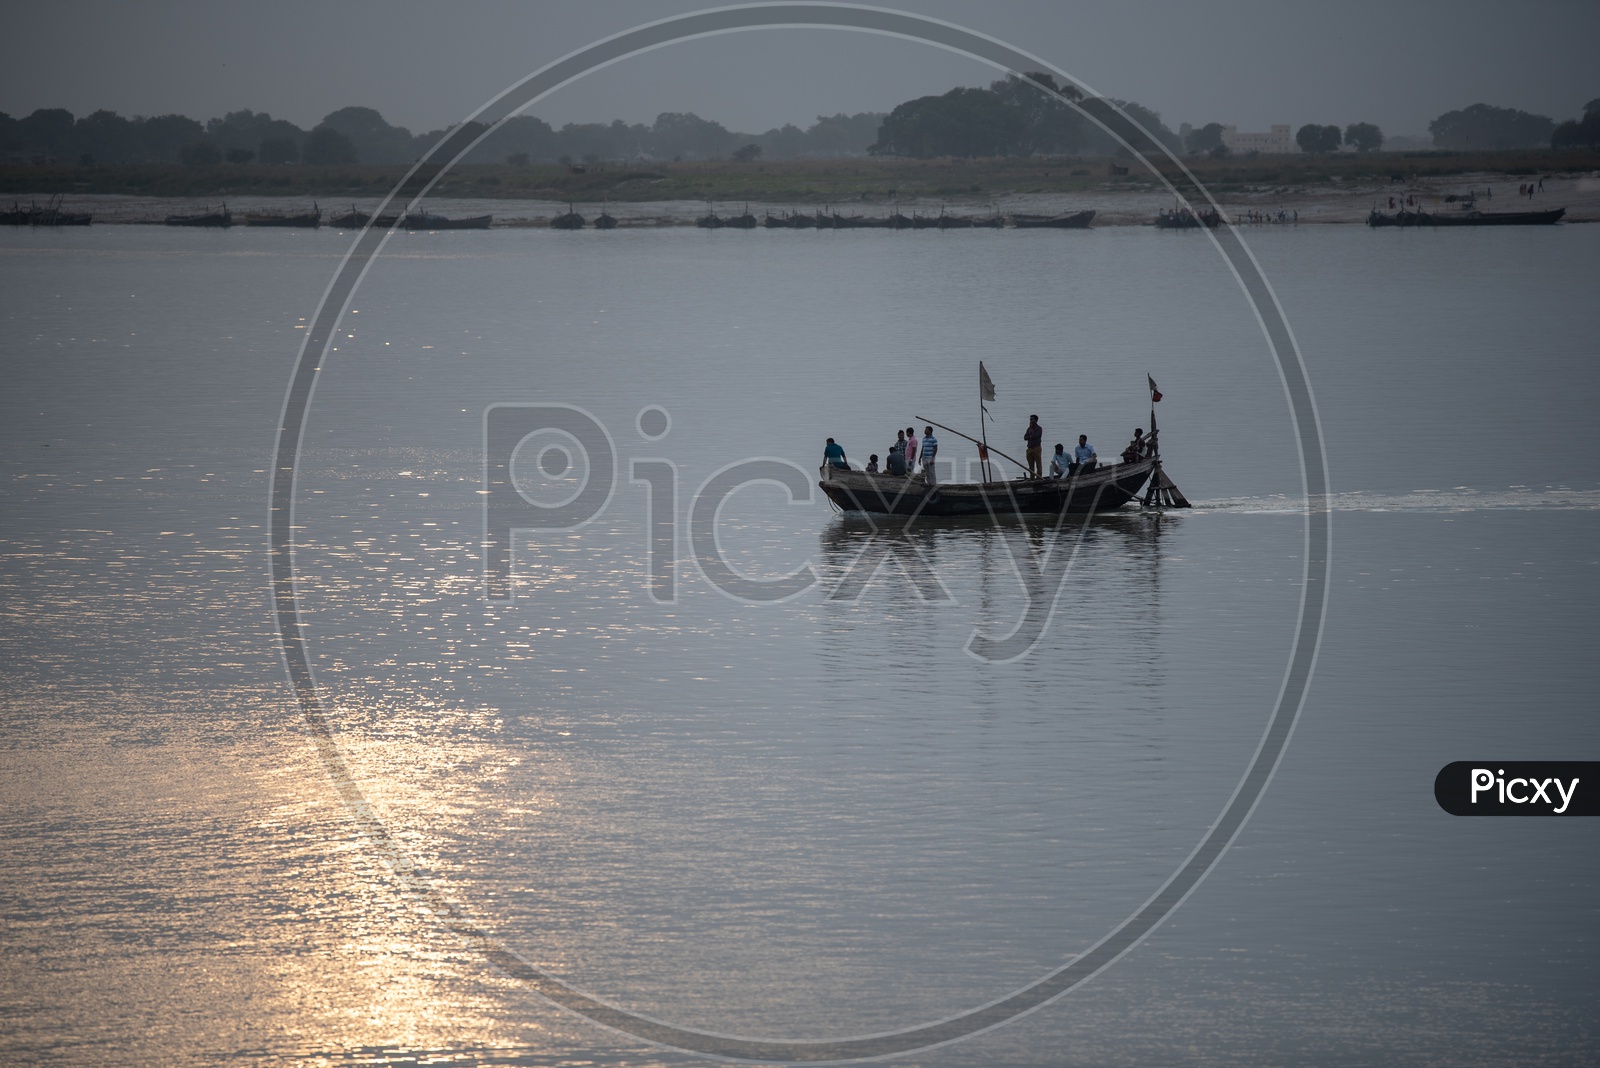 Commuting Boats At The Bank Of River Ganga  , Patna